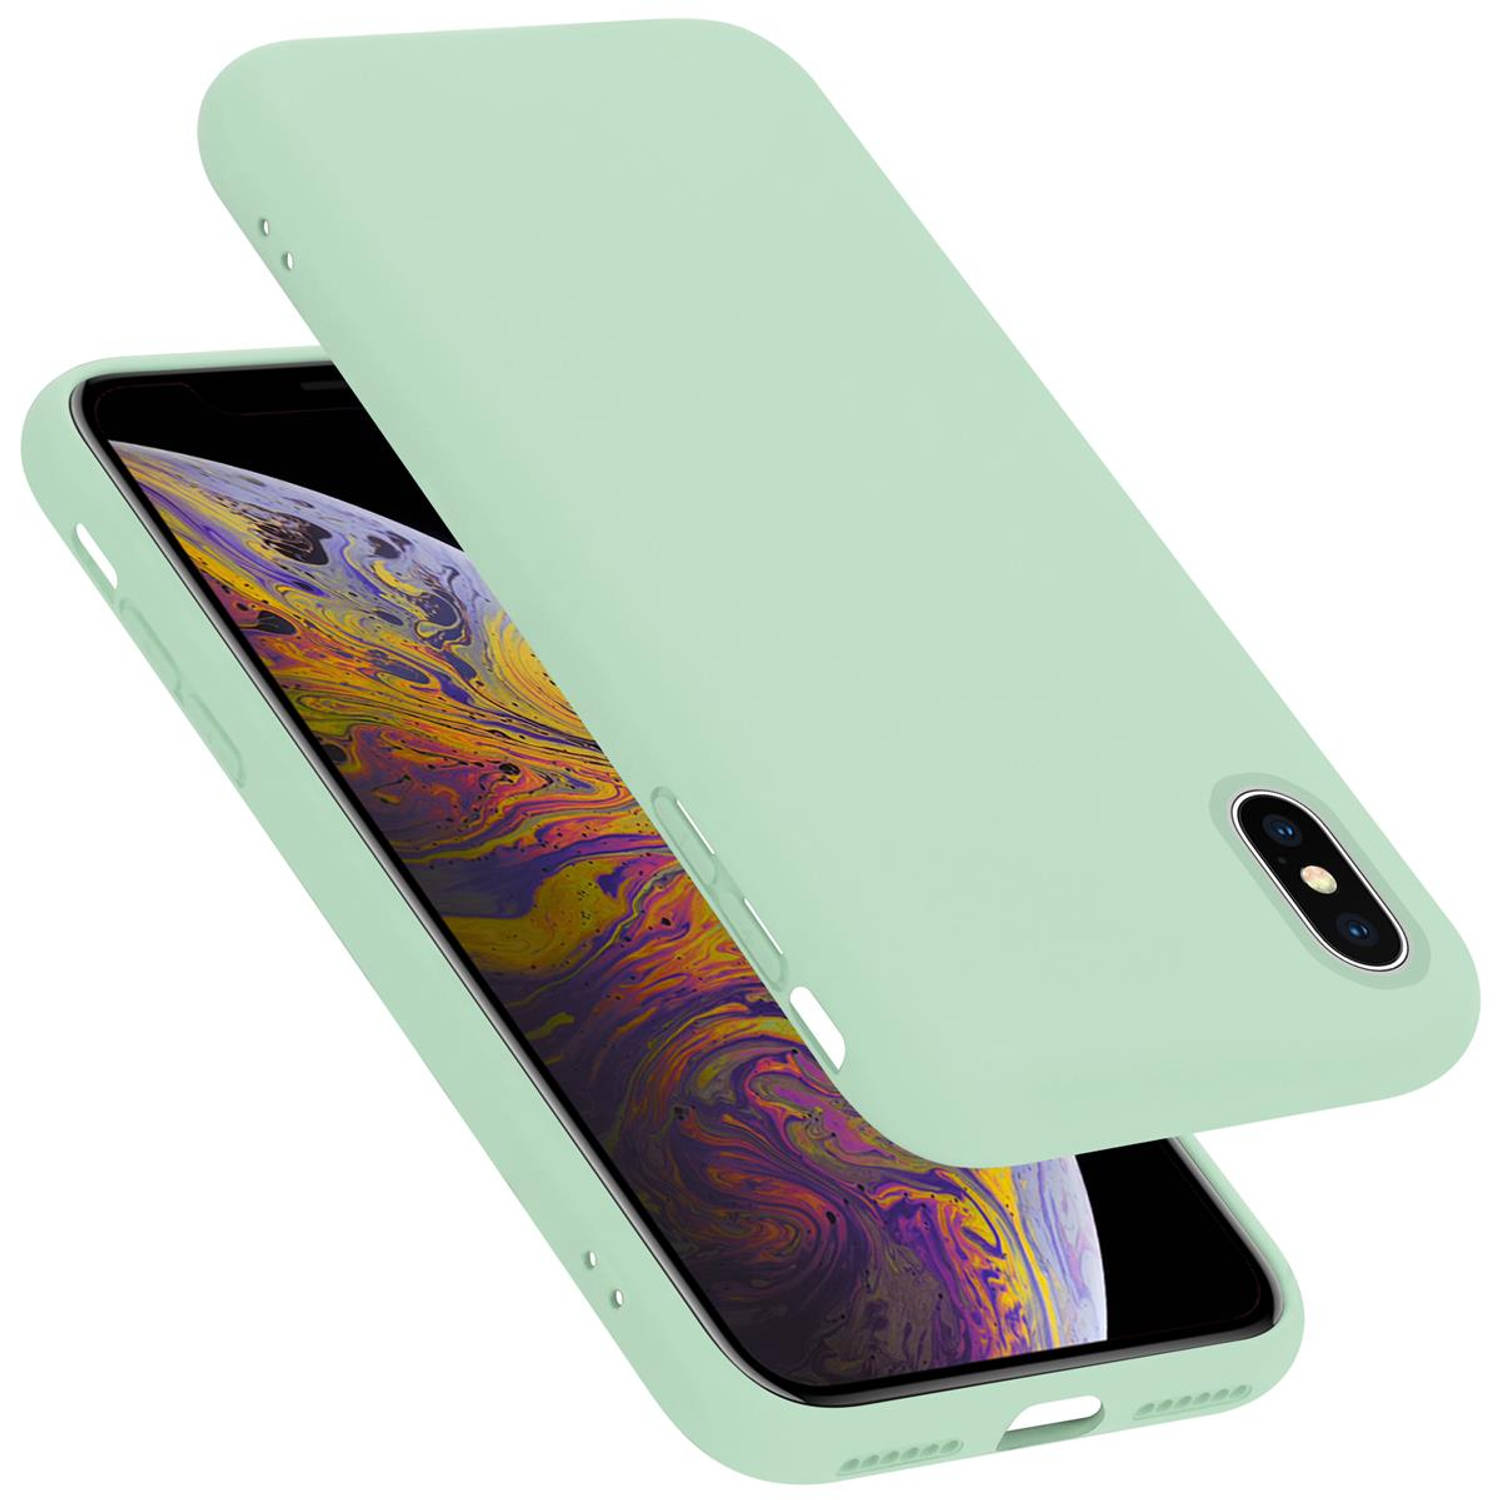 Cadorabo Hoesje voor Apple iPhone X / XS in LIQUID LICHT GROEN - Beschermhoes gemaakt van flexibel TPU silicone